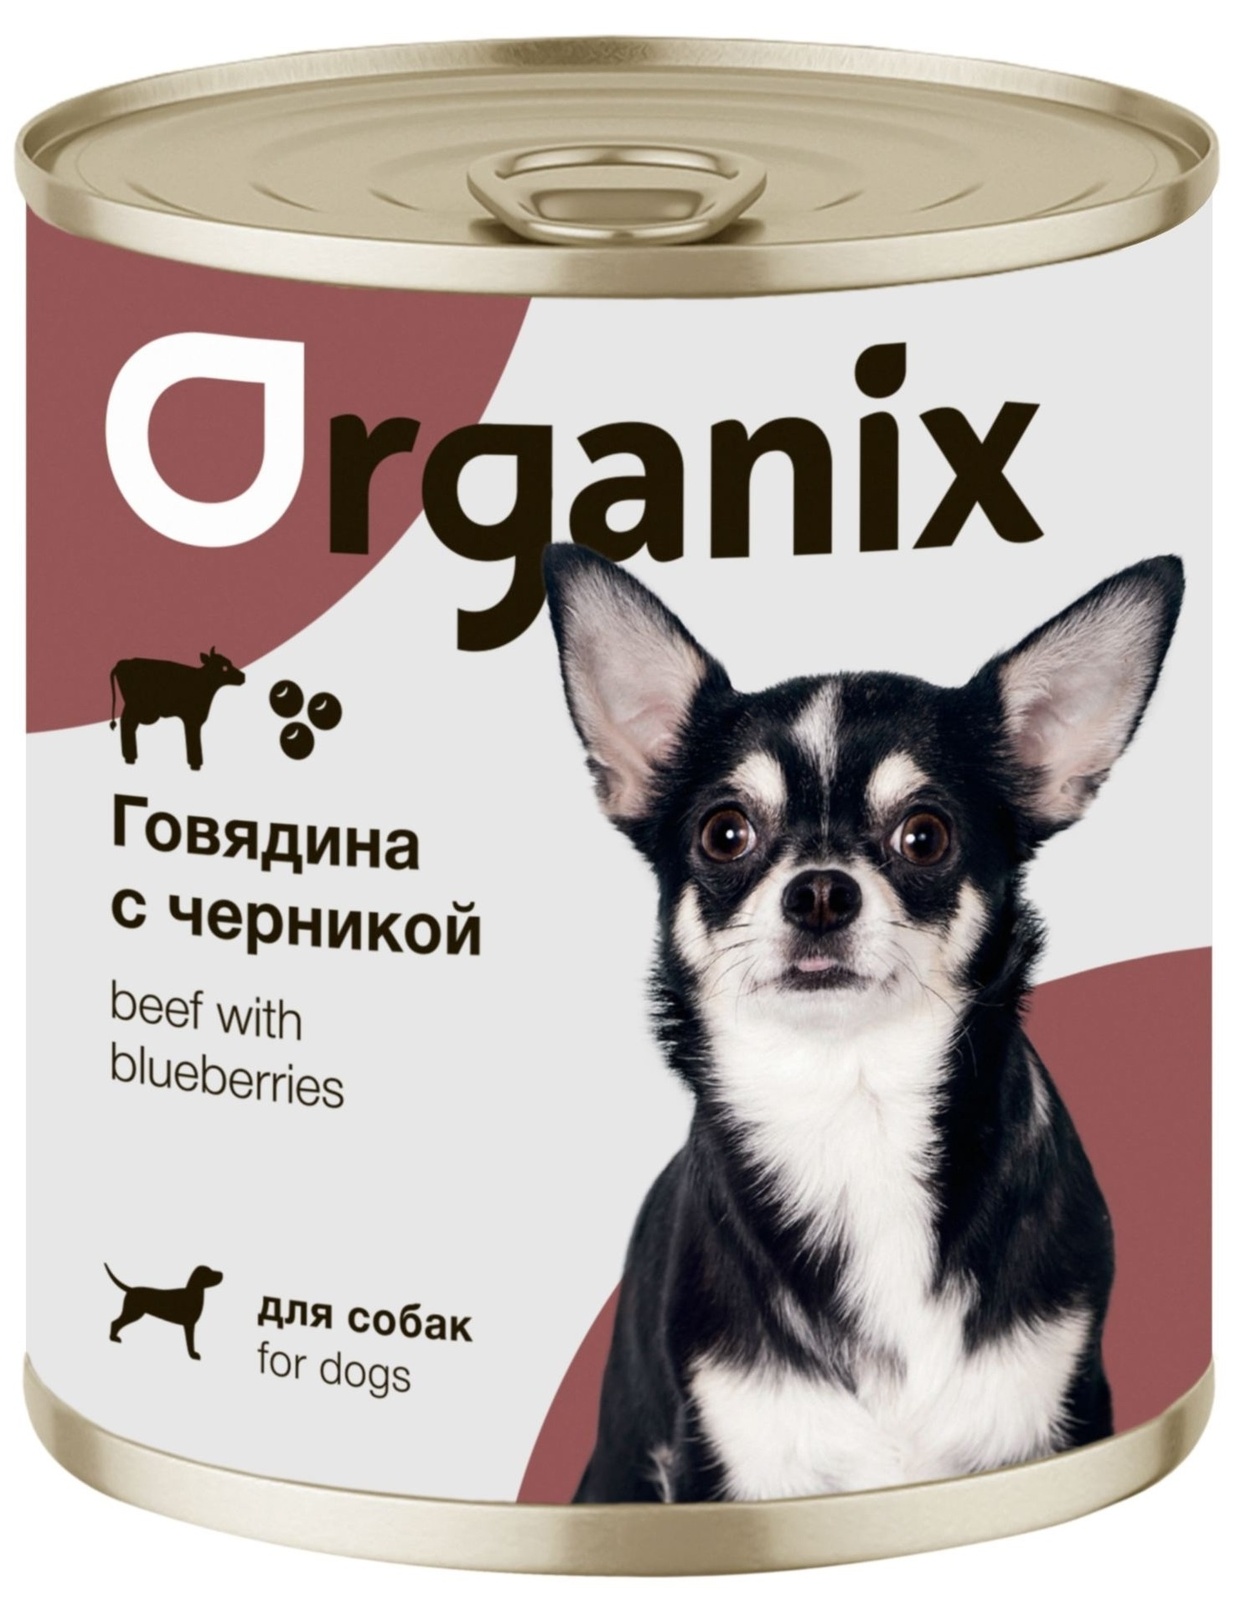 Organix консервы Organix консервы для собак Заливное из говядины с черникой (400 г) organix консервы organix консервы для собак телятина с зеленой фасолью 400 г